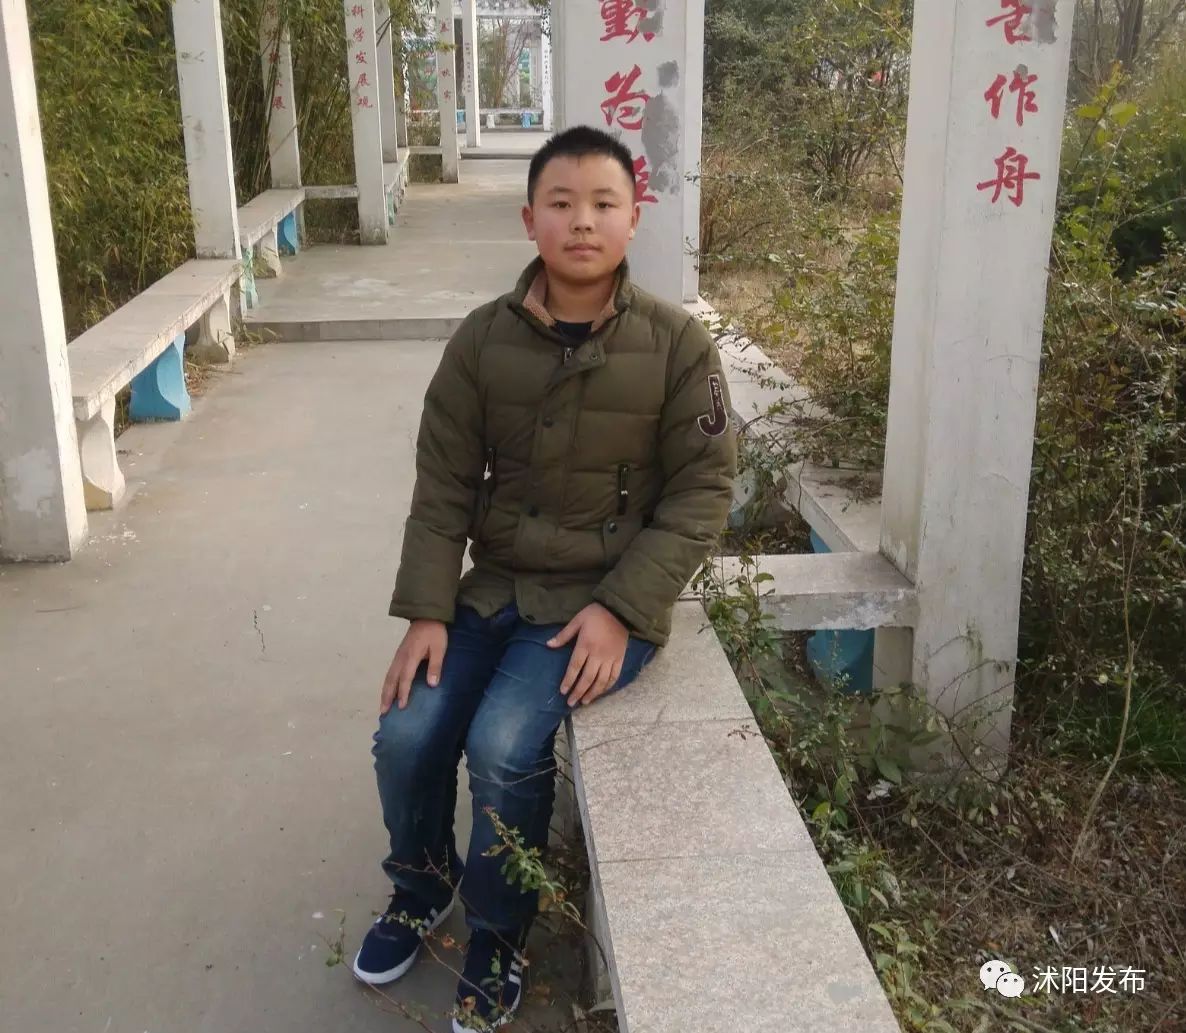 他叫尚春安,今年13岁,沭阳县北丁集初级中学初二(2)班学生.